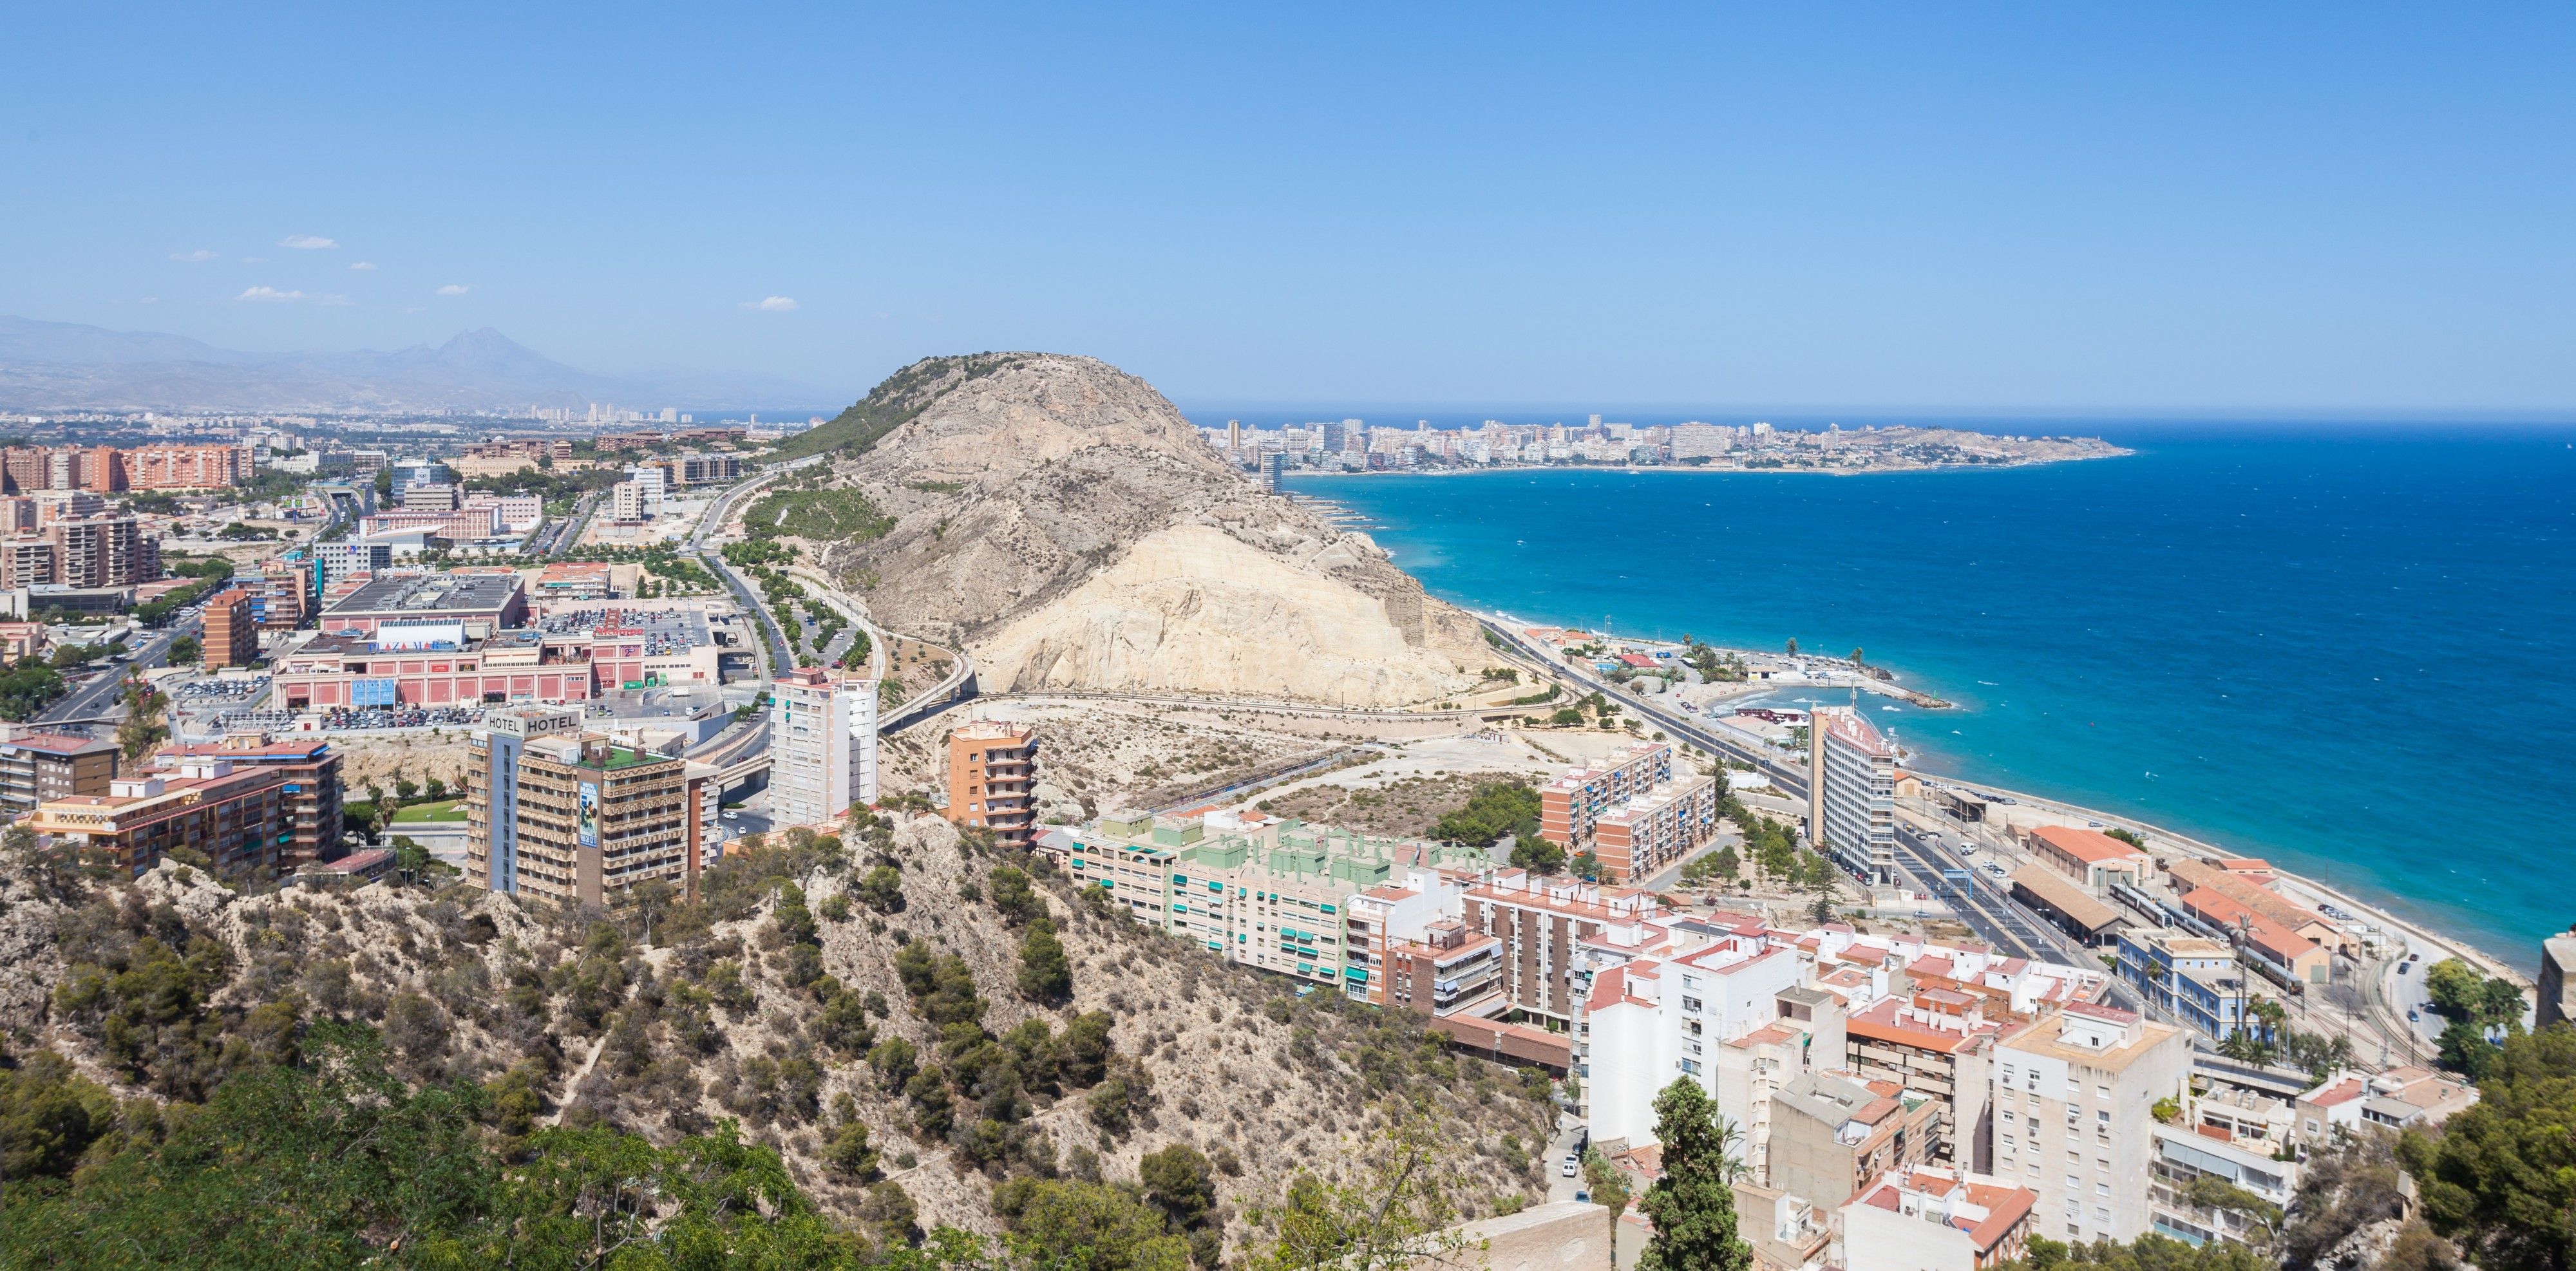 Vista de Alicante, España, 2014-07-04, DD 53